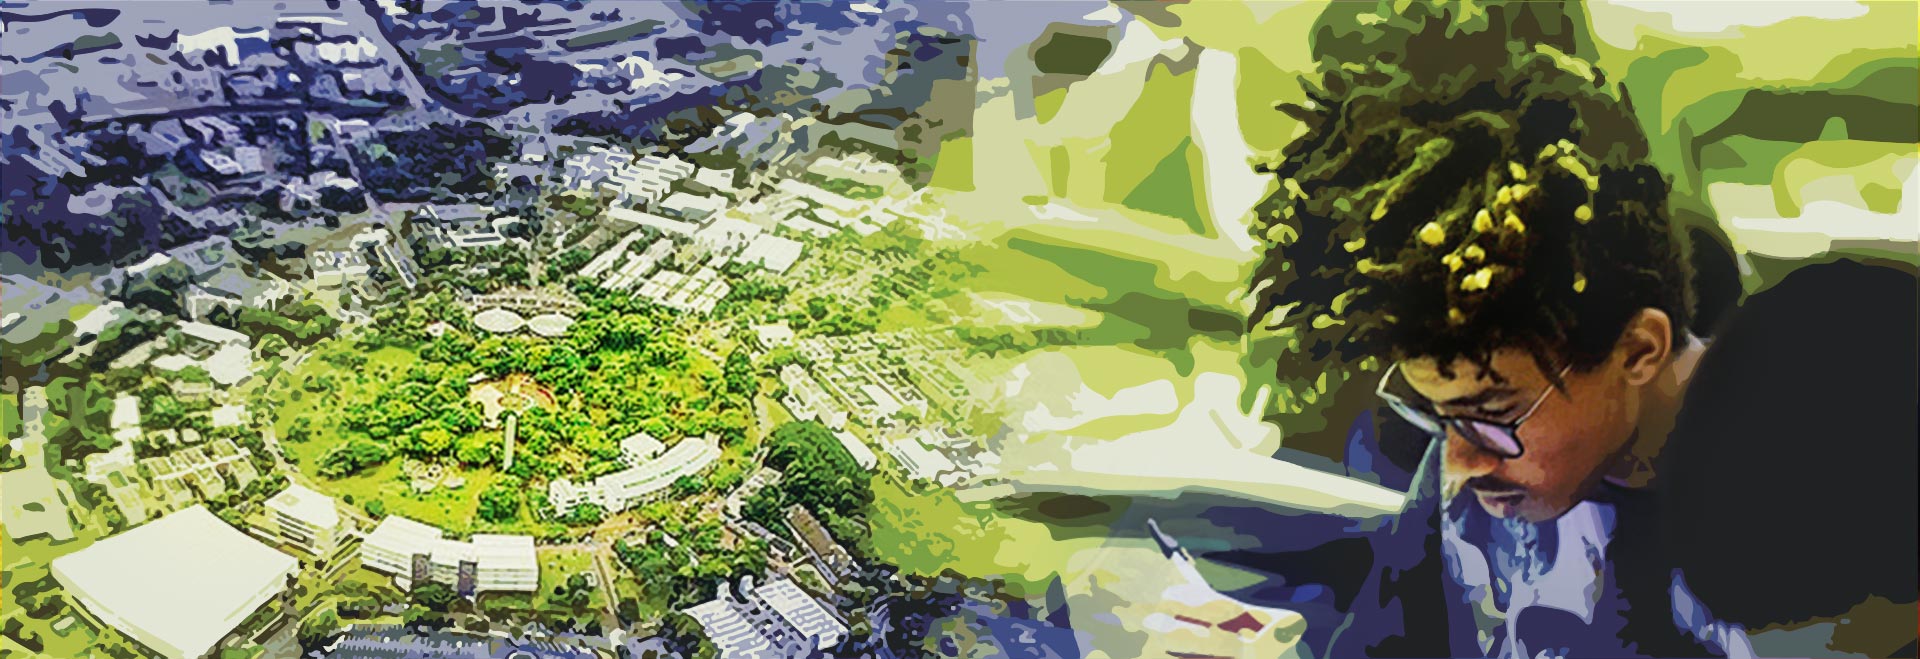 audiodescrição: montagem com duas fotos coloridas, em uma sobreposição de imagem aérea do campus da Unicamp e um estudante com a cabeça baixa fazendo prova